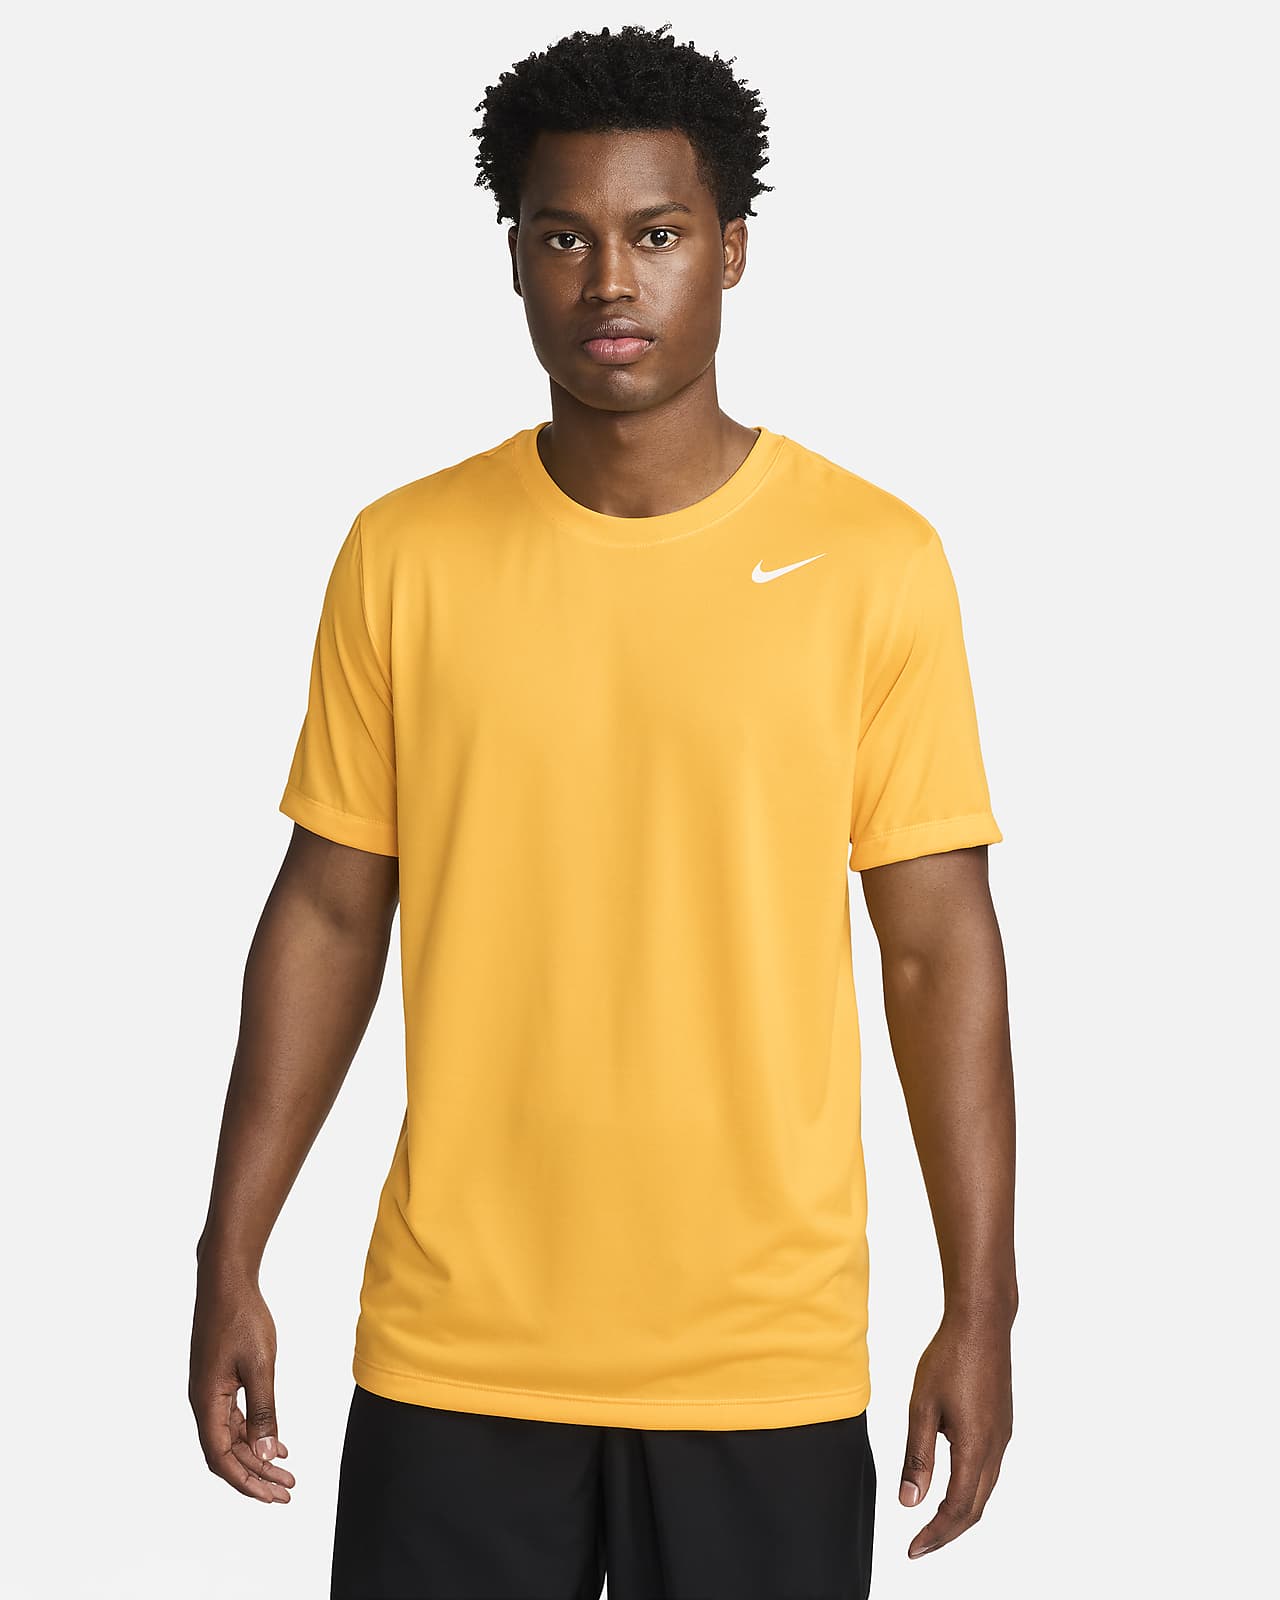 Nike Dri-FIT Legend Men's Fitness T-Shirt